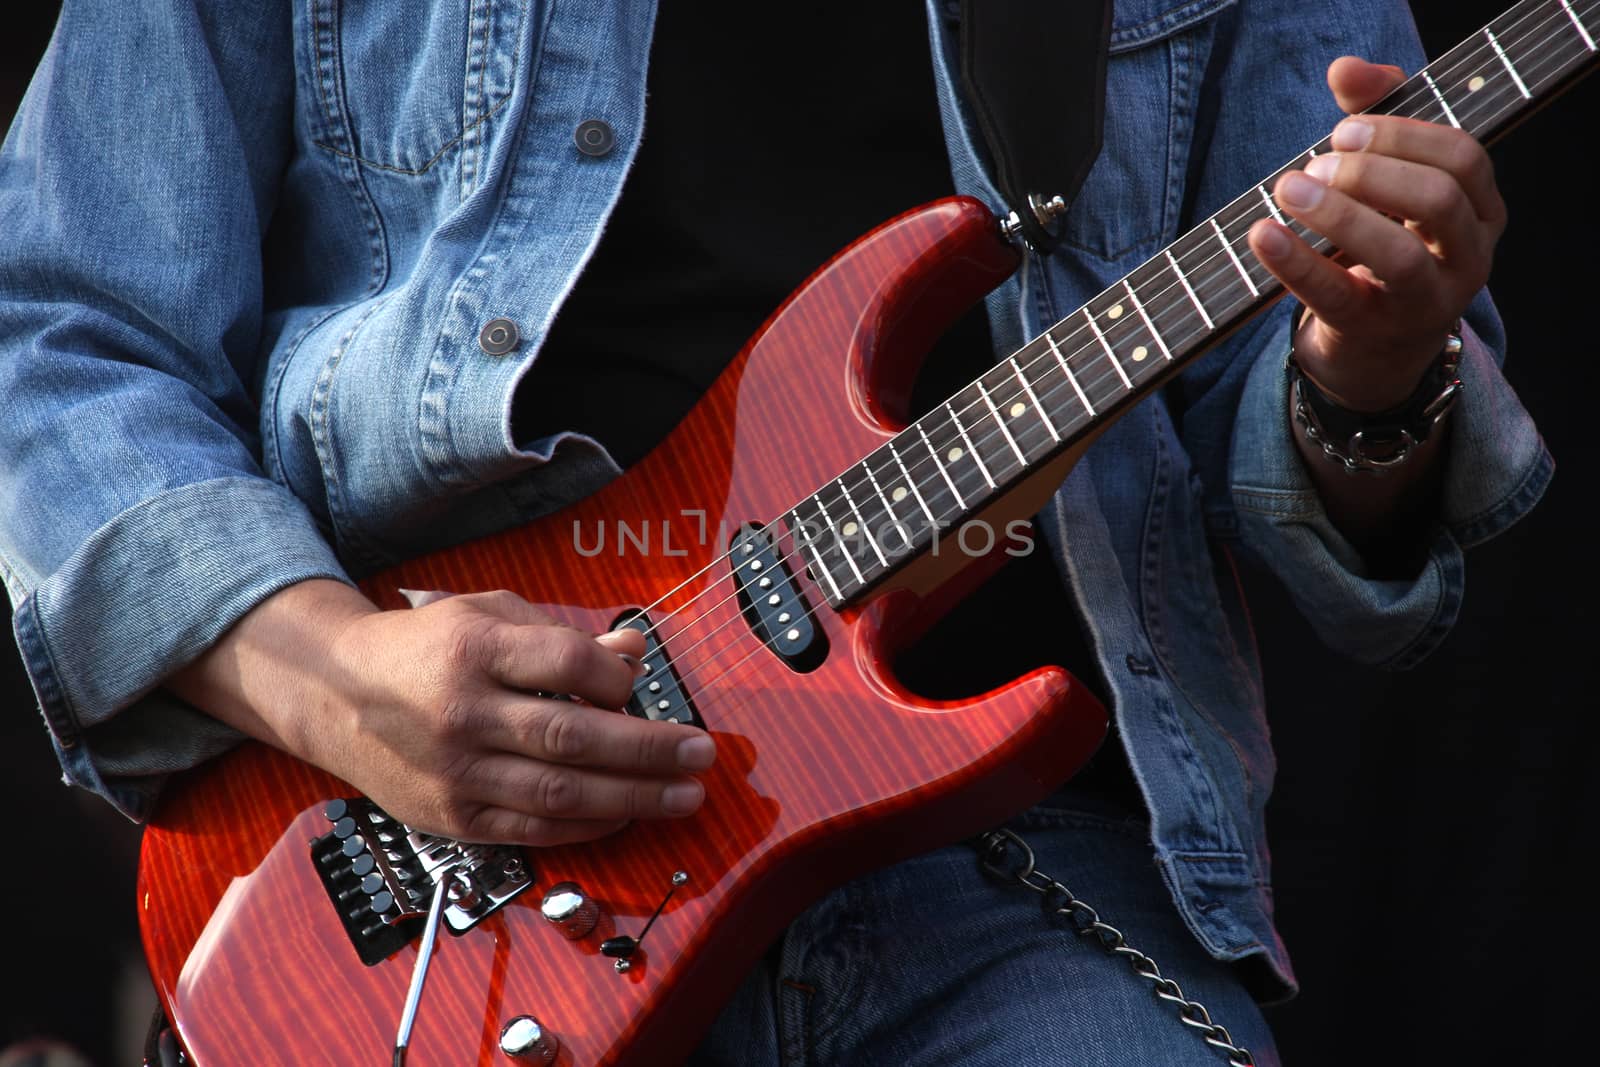 Guitarist's hands